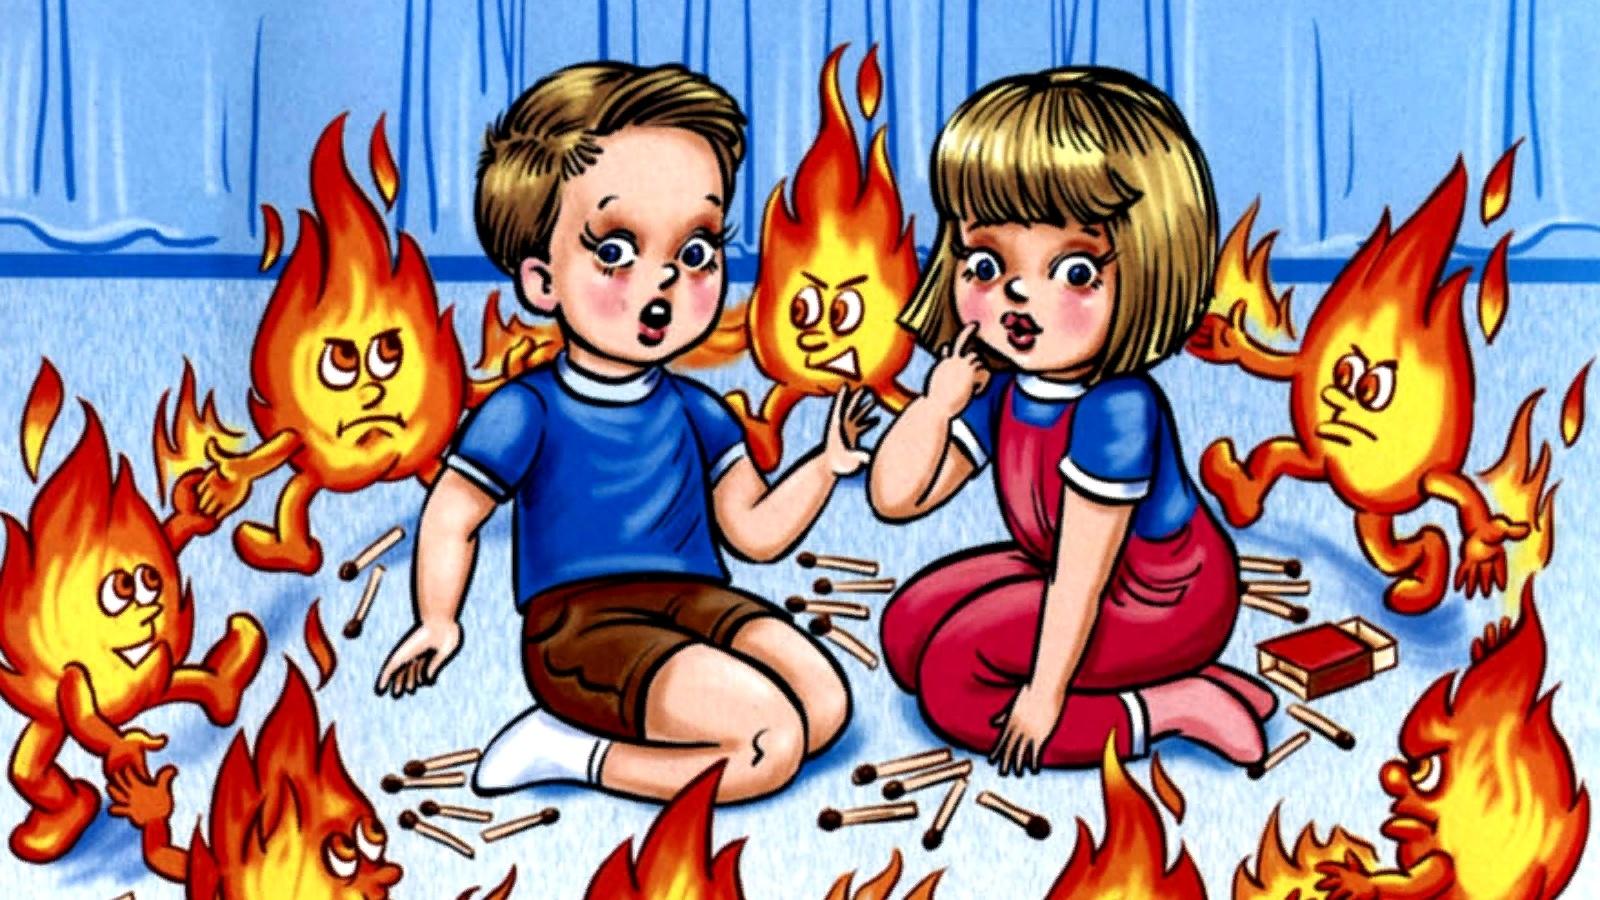 Рисунок профилактика пожаров среди детей. Шалости детей с огнем. Пожарная безопасность для детей. Огонь опасен для детей. Противопожарная безопасность рисунки.